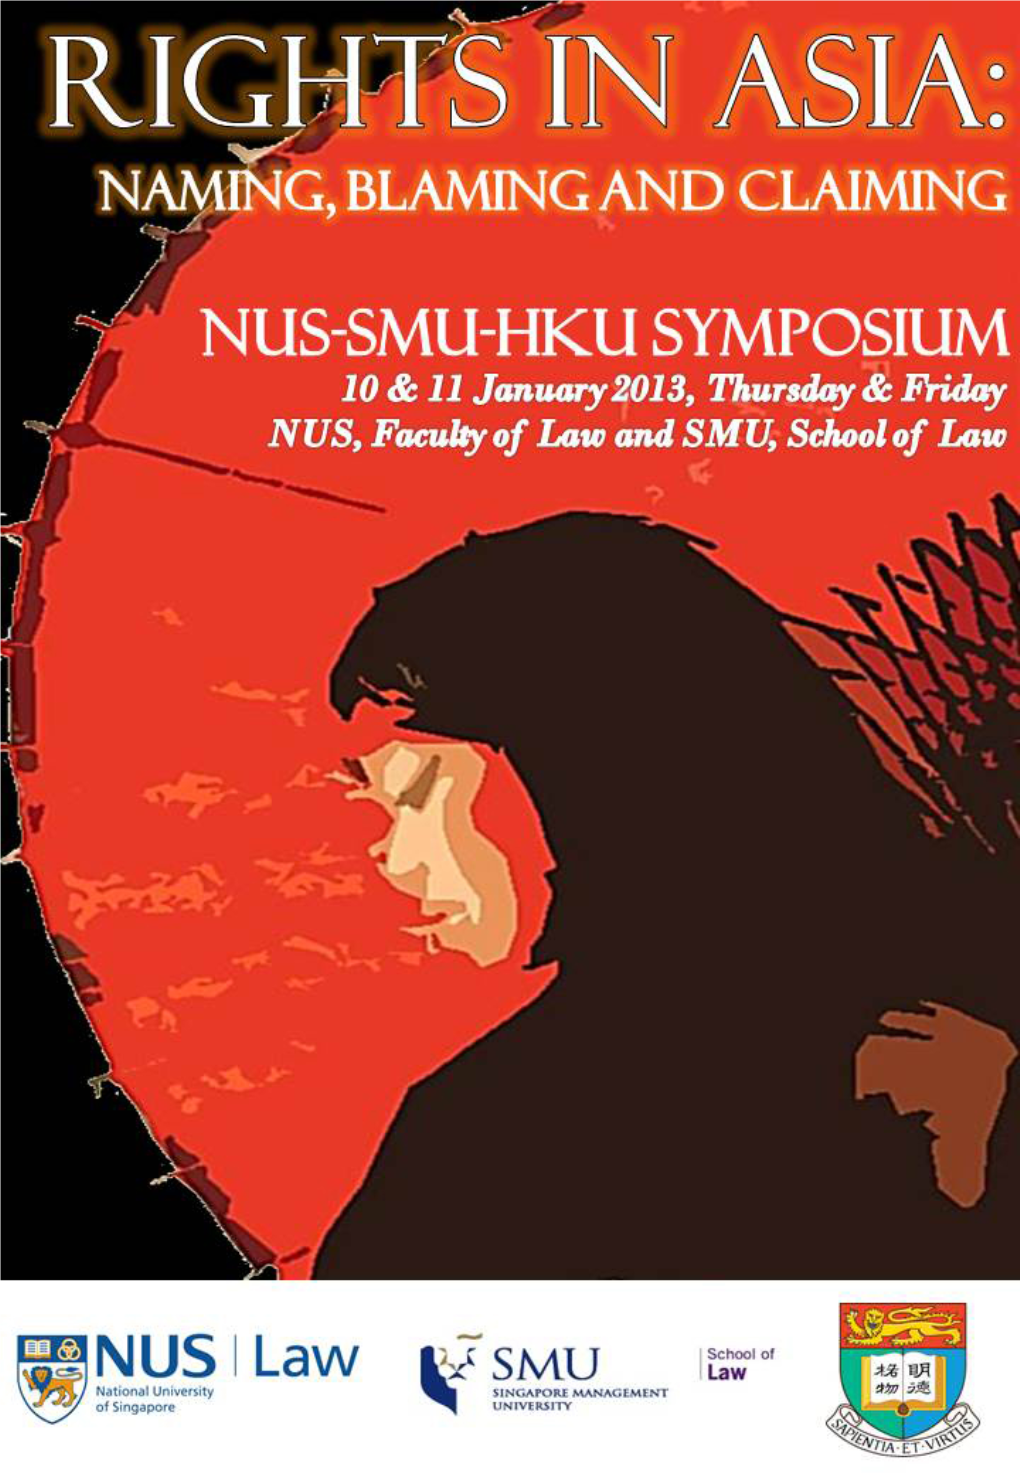 NUS-SMU-HKU Symposium 2013